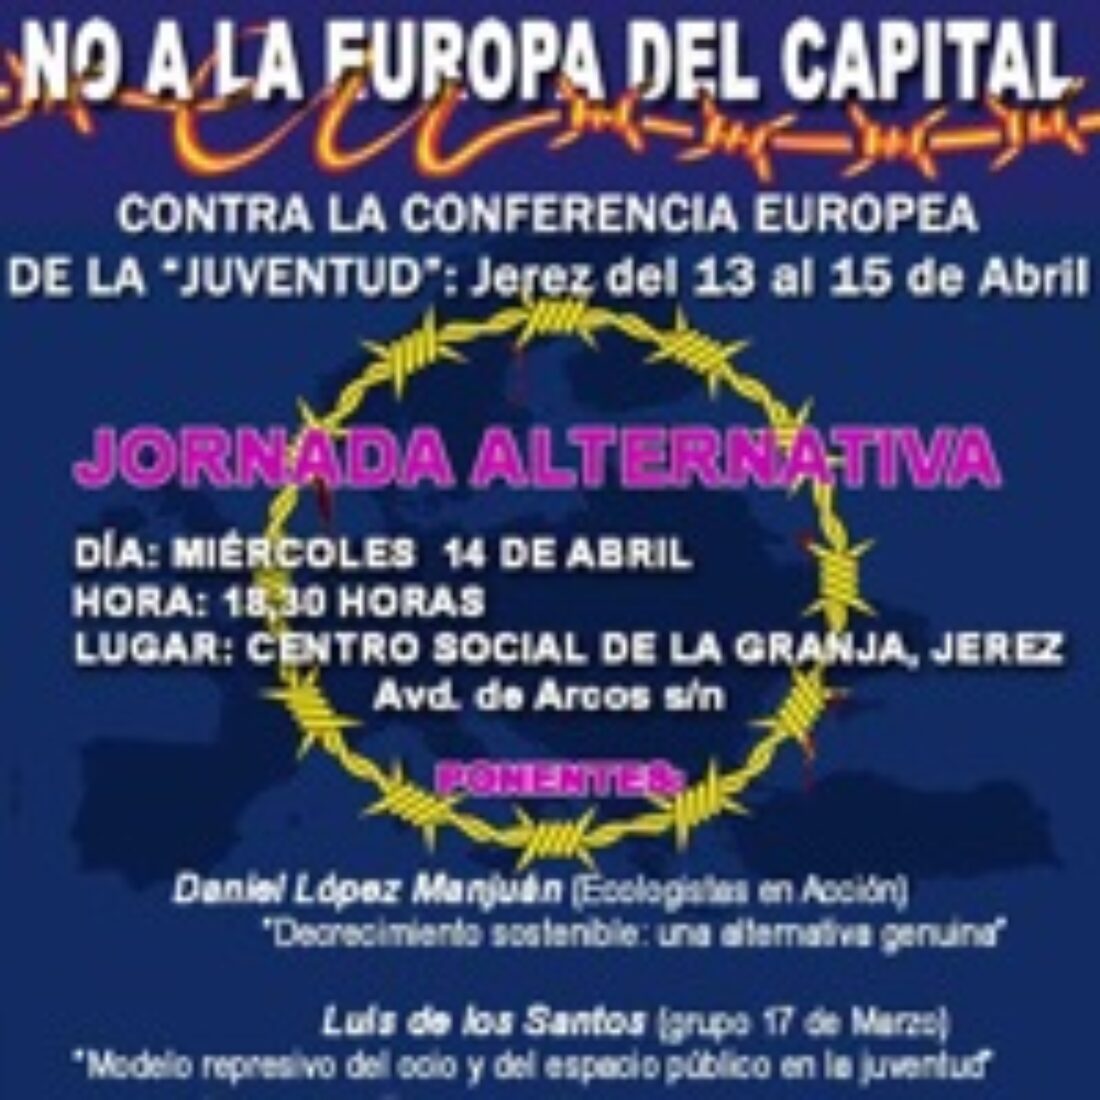 13 al 15 de Abril, Jerez : Contra la Conferencia Europa de la «Juventud»